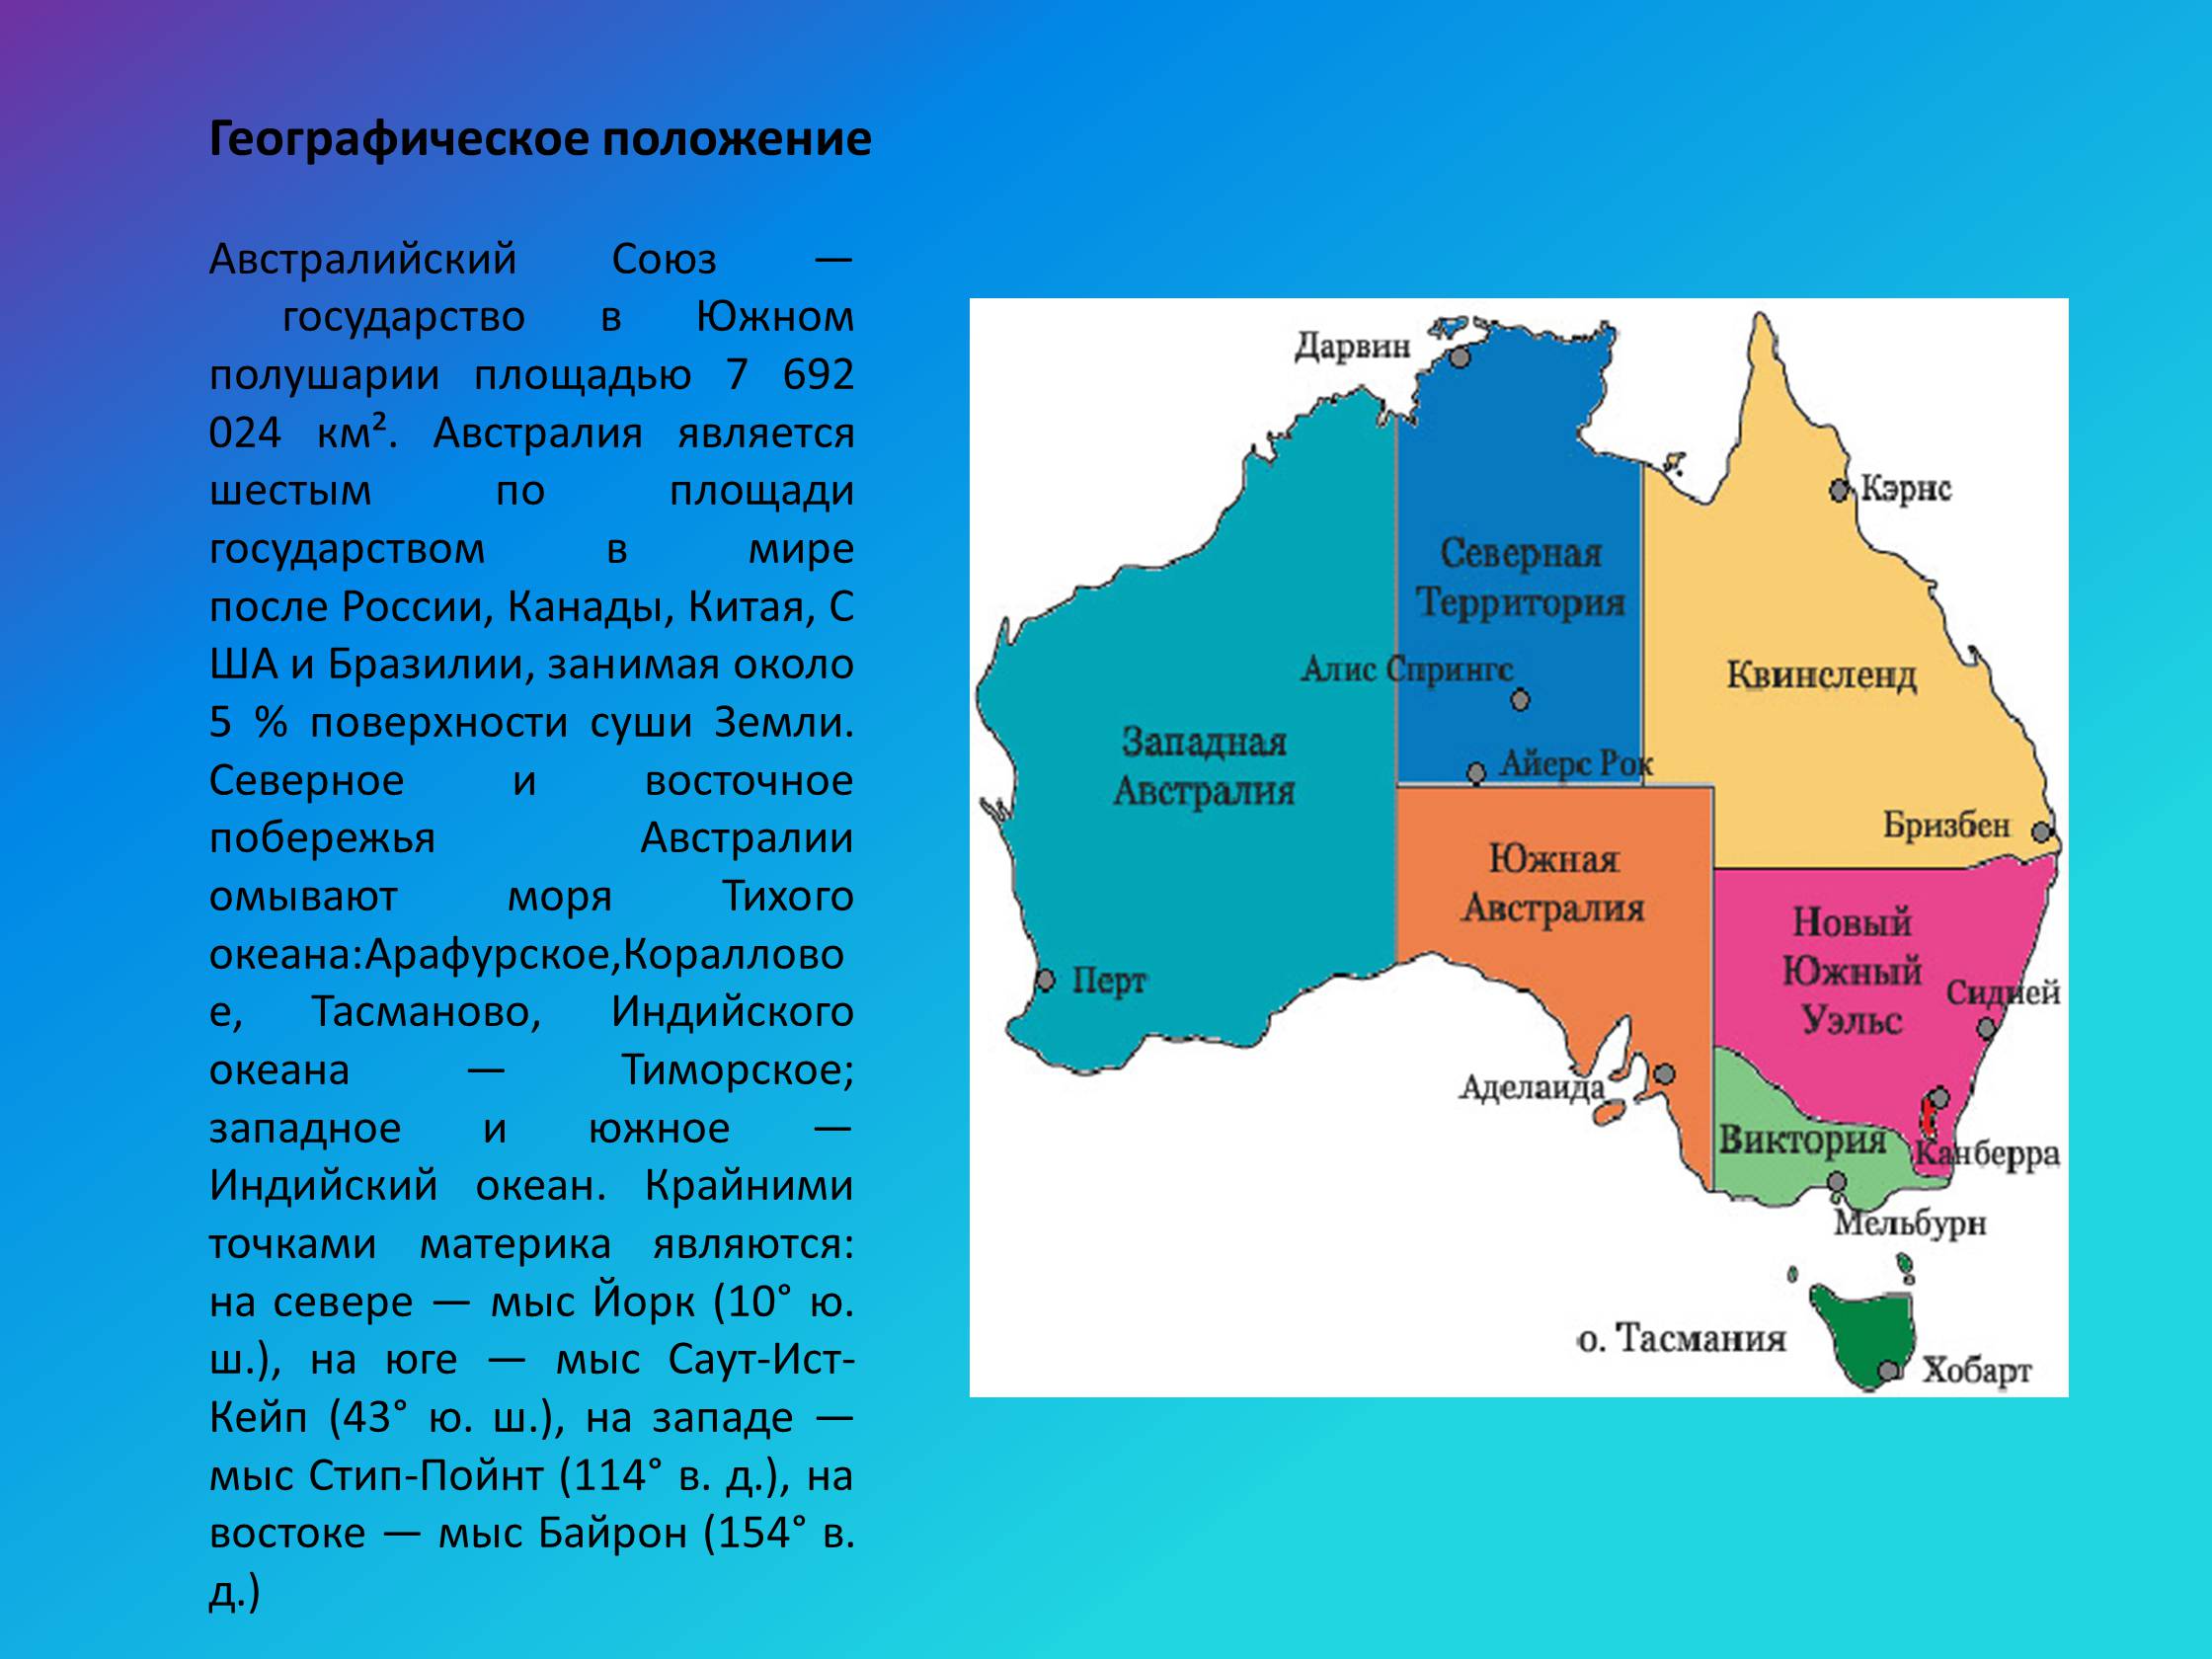 Столица австралии географические координаты 5. Западная Австралия географическое положение. Расположение австралийского Союза на материке. Географическое положение Австралии и австралийского Союза. Географическое положение Юго Западной Австралии.